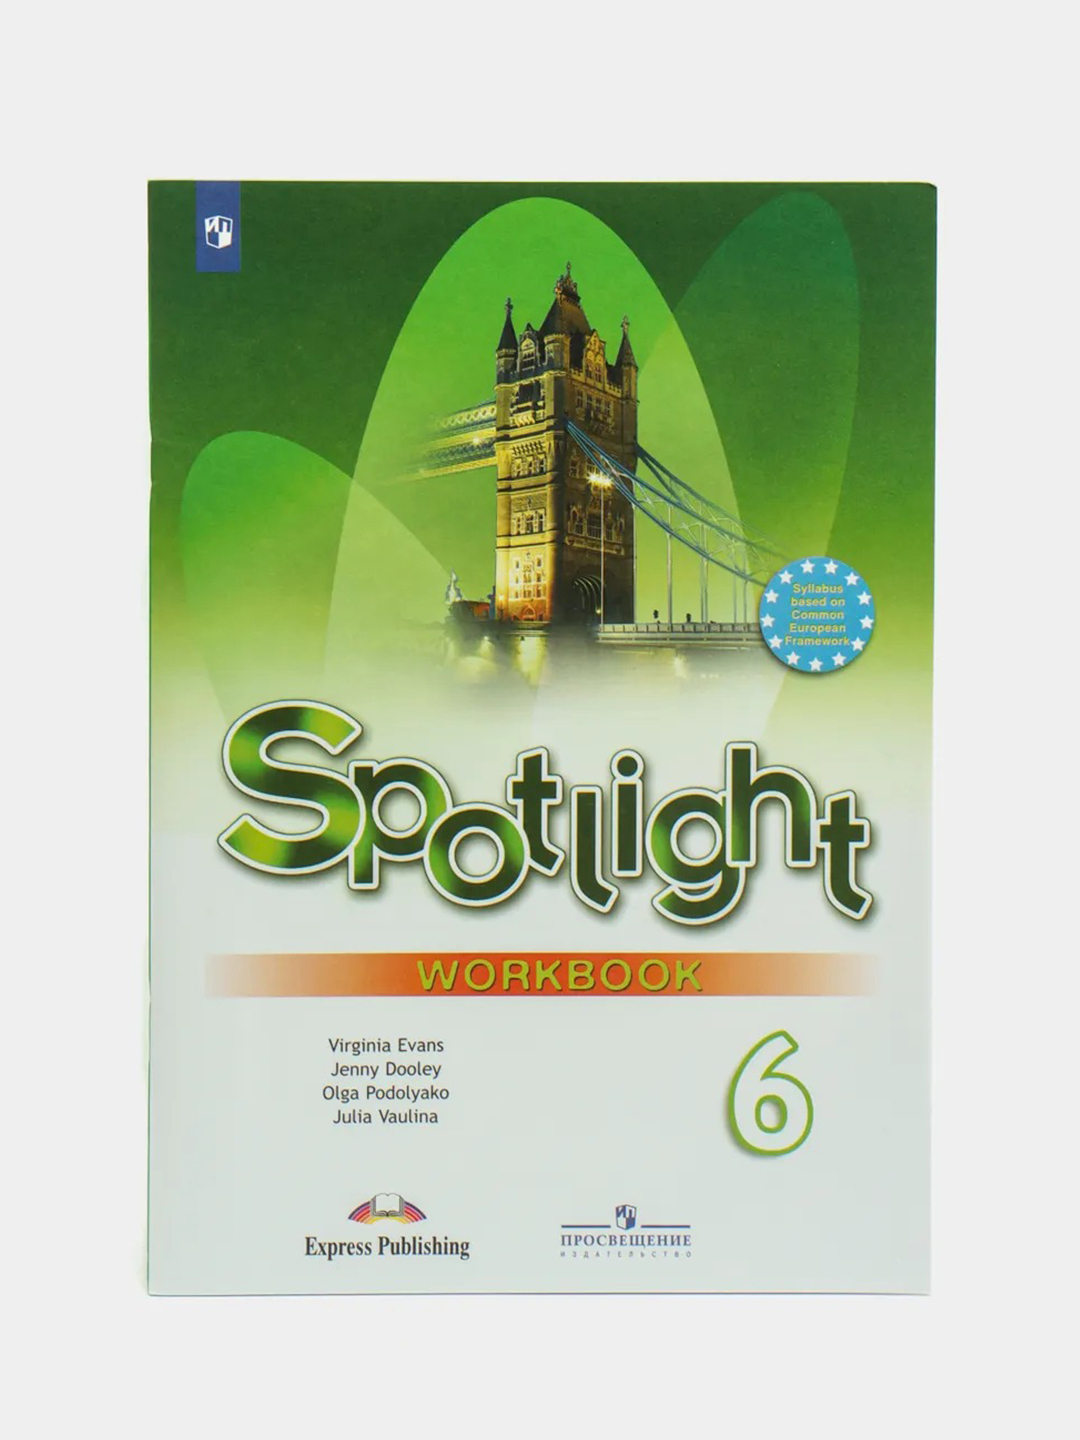 Spotlight 8 умк. Spotlight 7 класс 7 Wordbook. Workbook 8 класс Spotlight. Ваулина ю.е., Дули Дженни, Подоляко о.е., Эванс. Спотлайт 8 рабочая тетрадь.